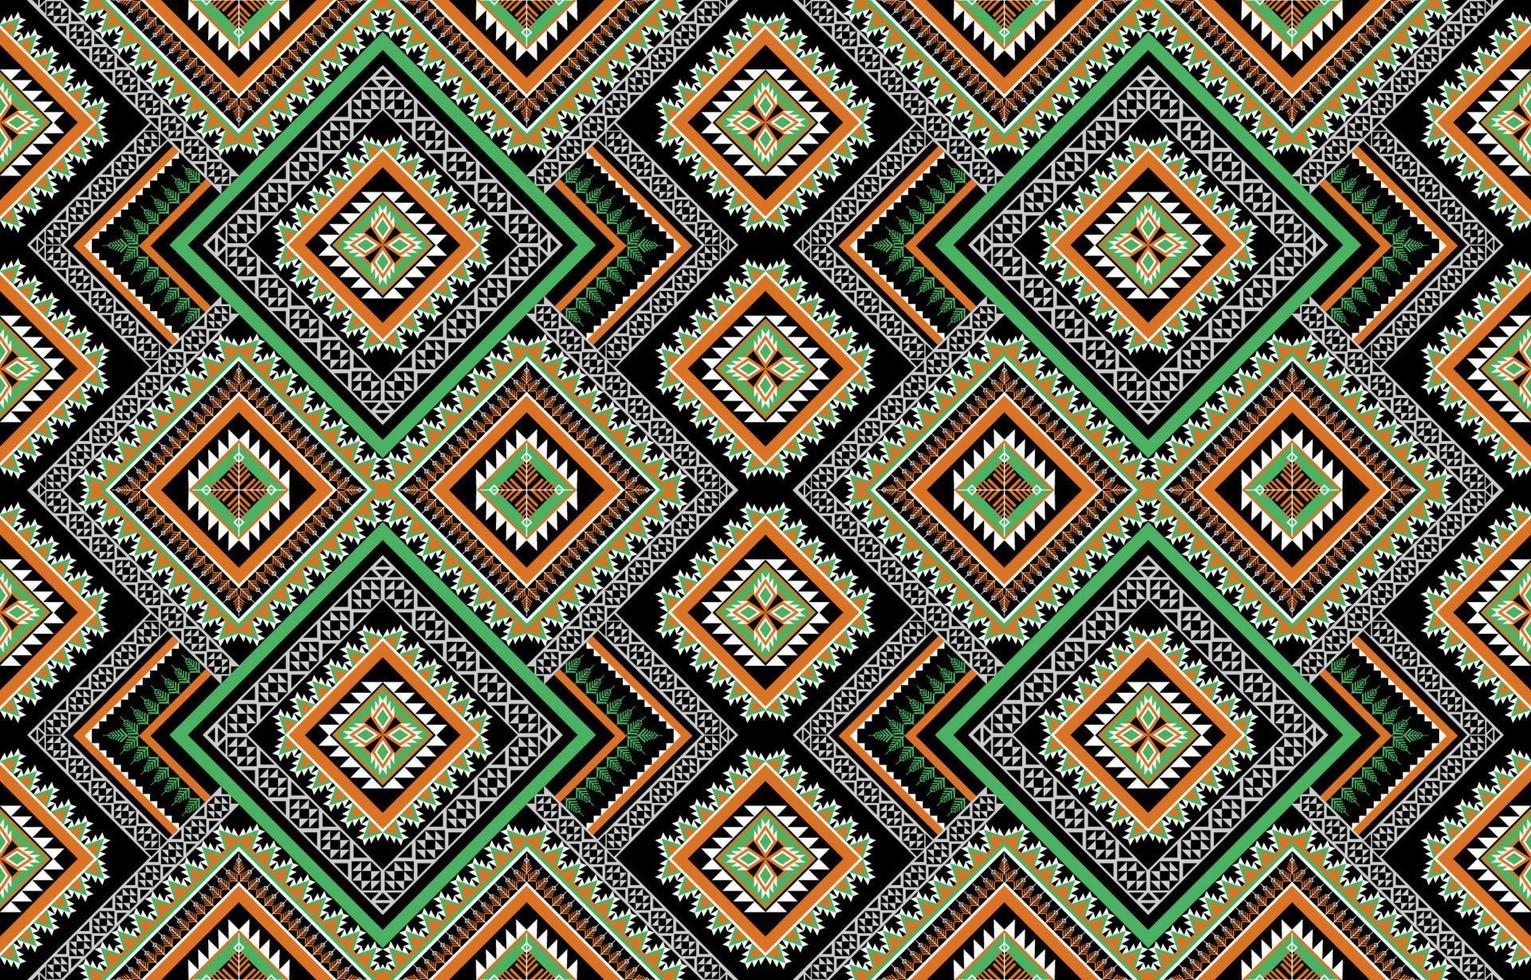 etnische naadloze patroon. bloem decoratie. traditionele tribale stijl. ontwerp voor achtergrond,illustratie,textuur,stof,behang,kleding,tapijt,borduurwerk. vector